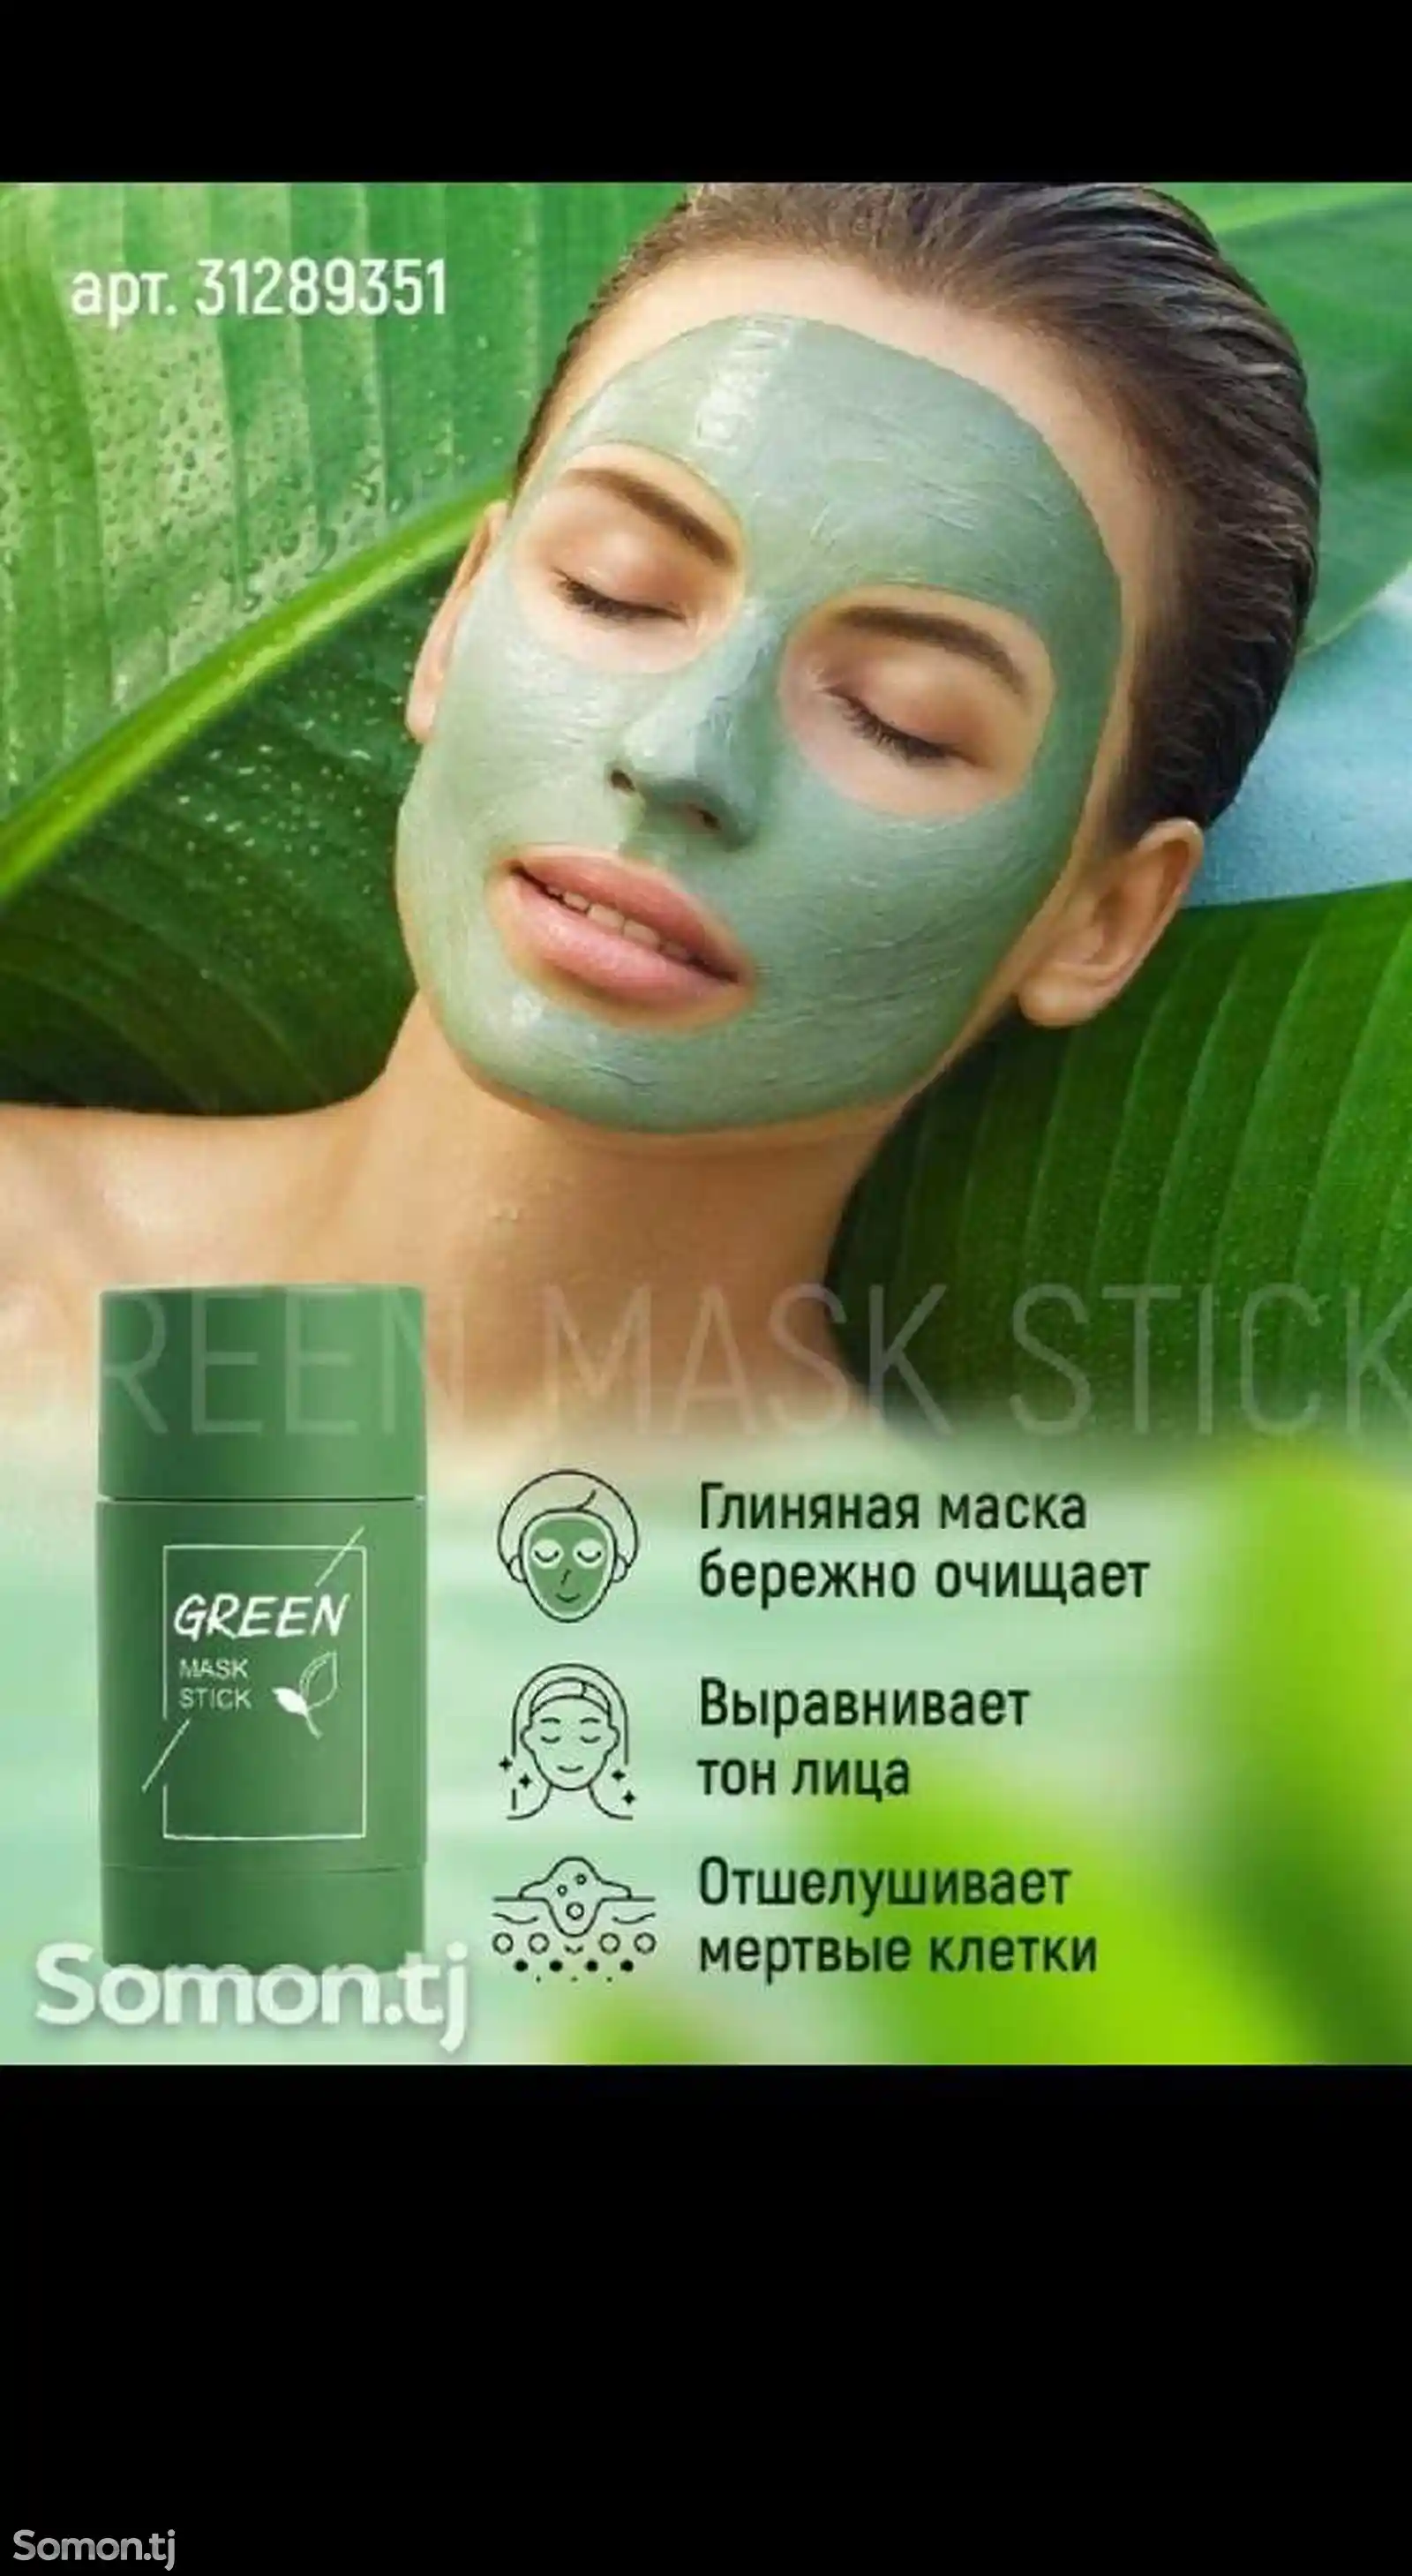 Глиняная маска для глубокого очищения Green Mask Stick-2